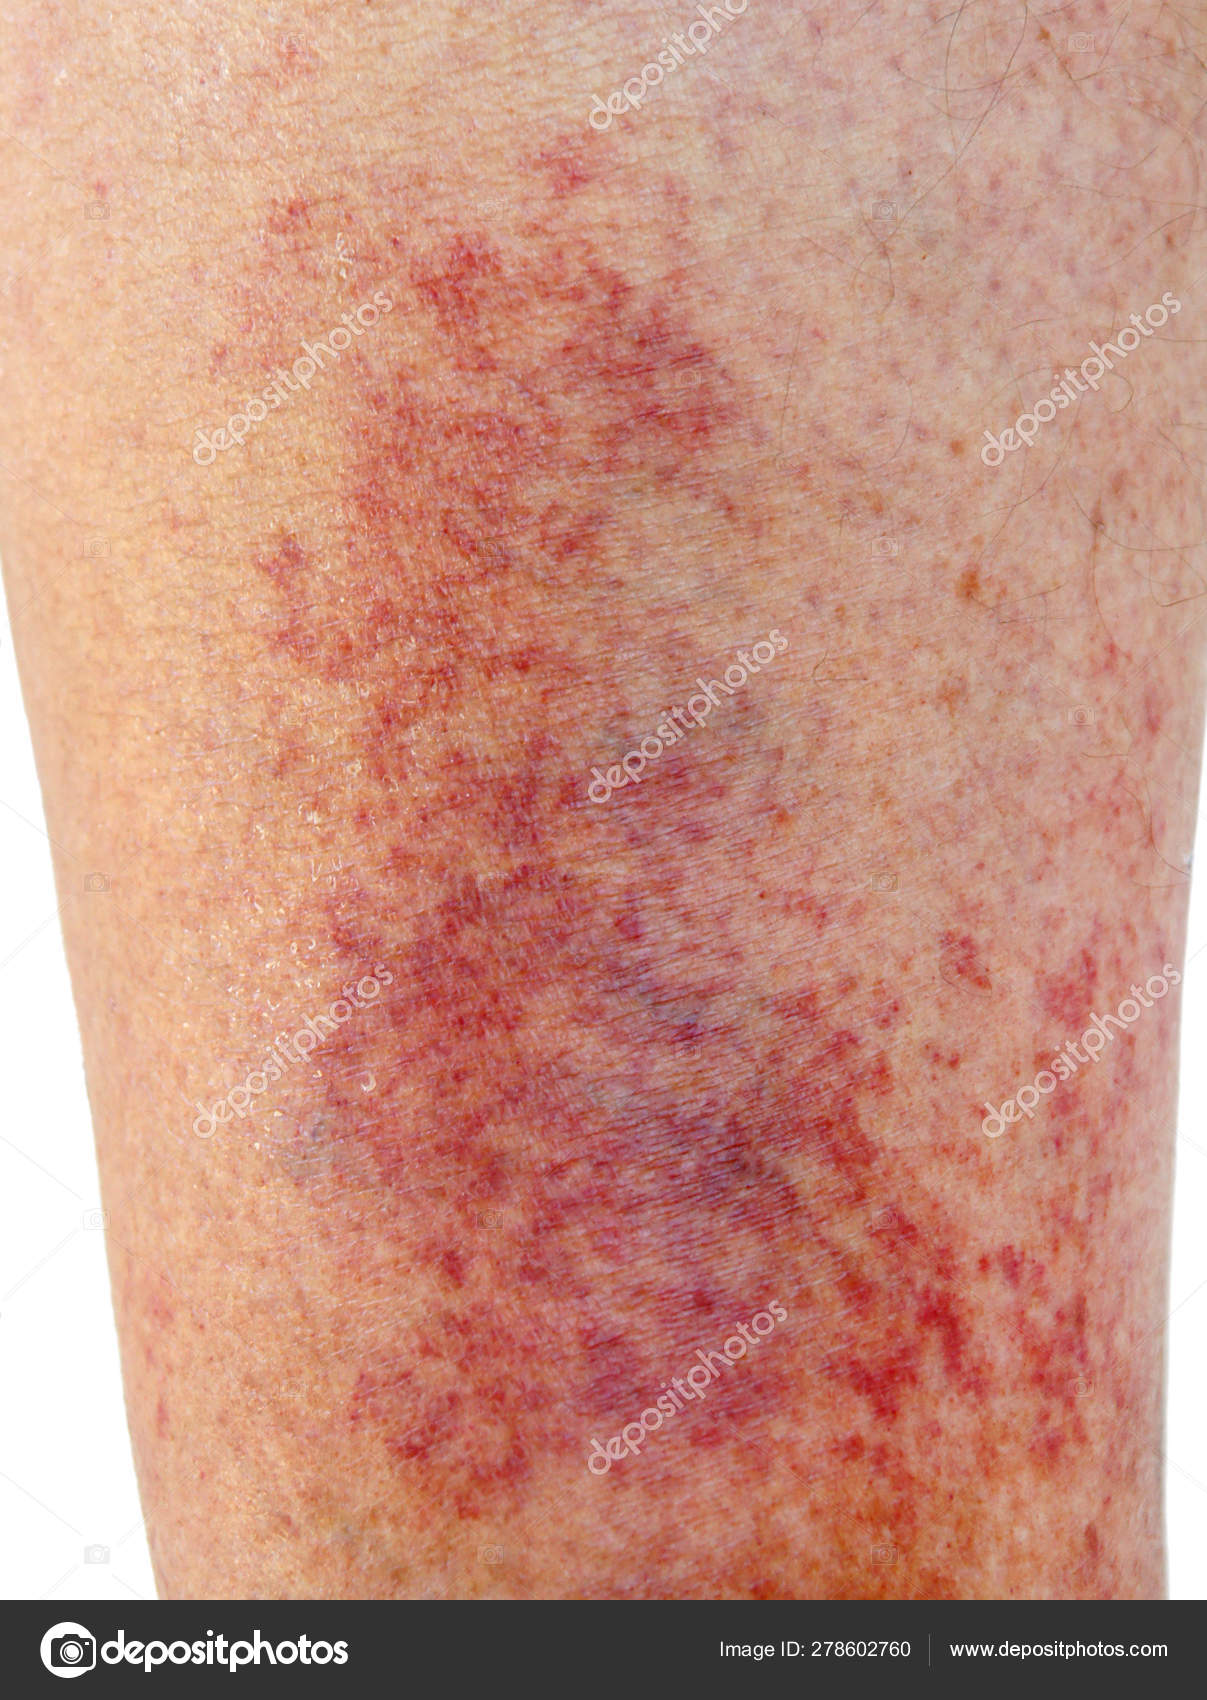 Dermatite de contact allergique au niveau du tibia — Photo de ...